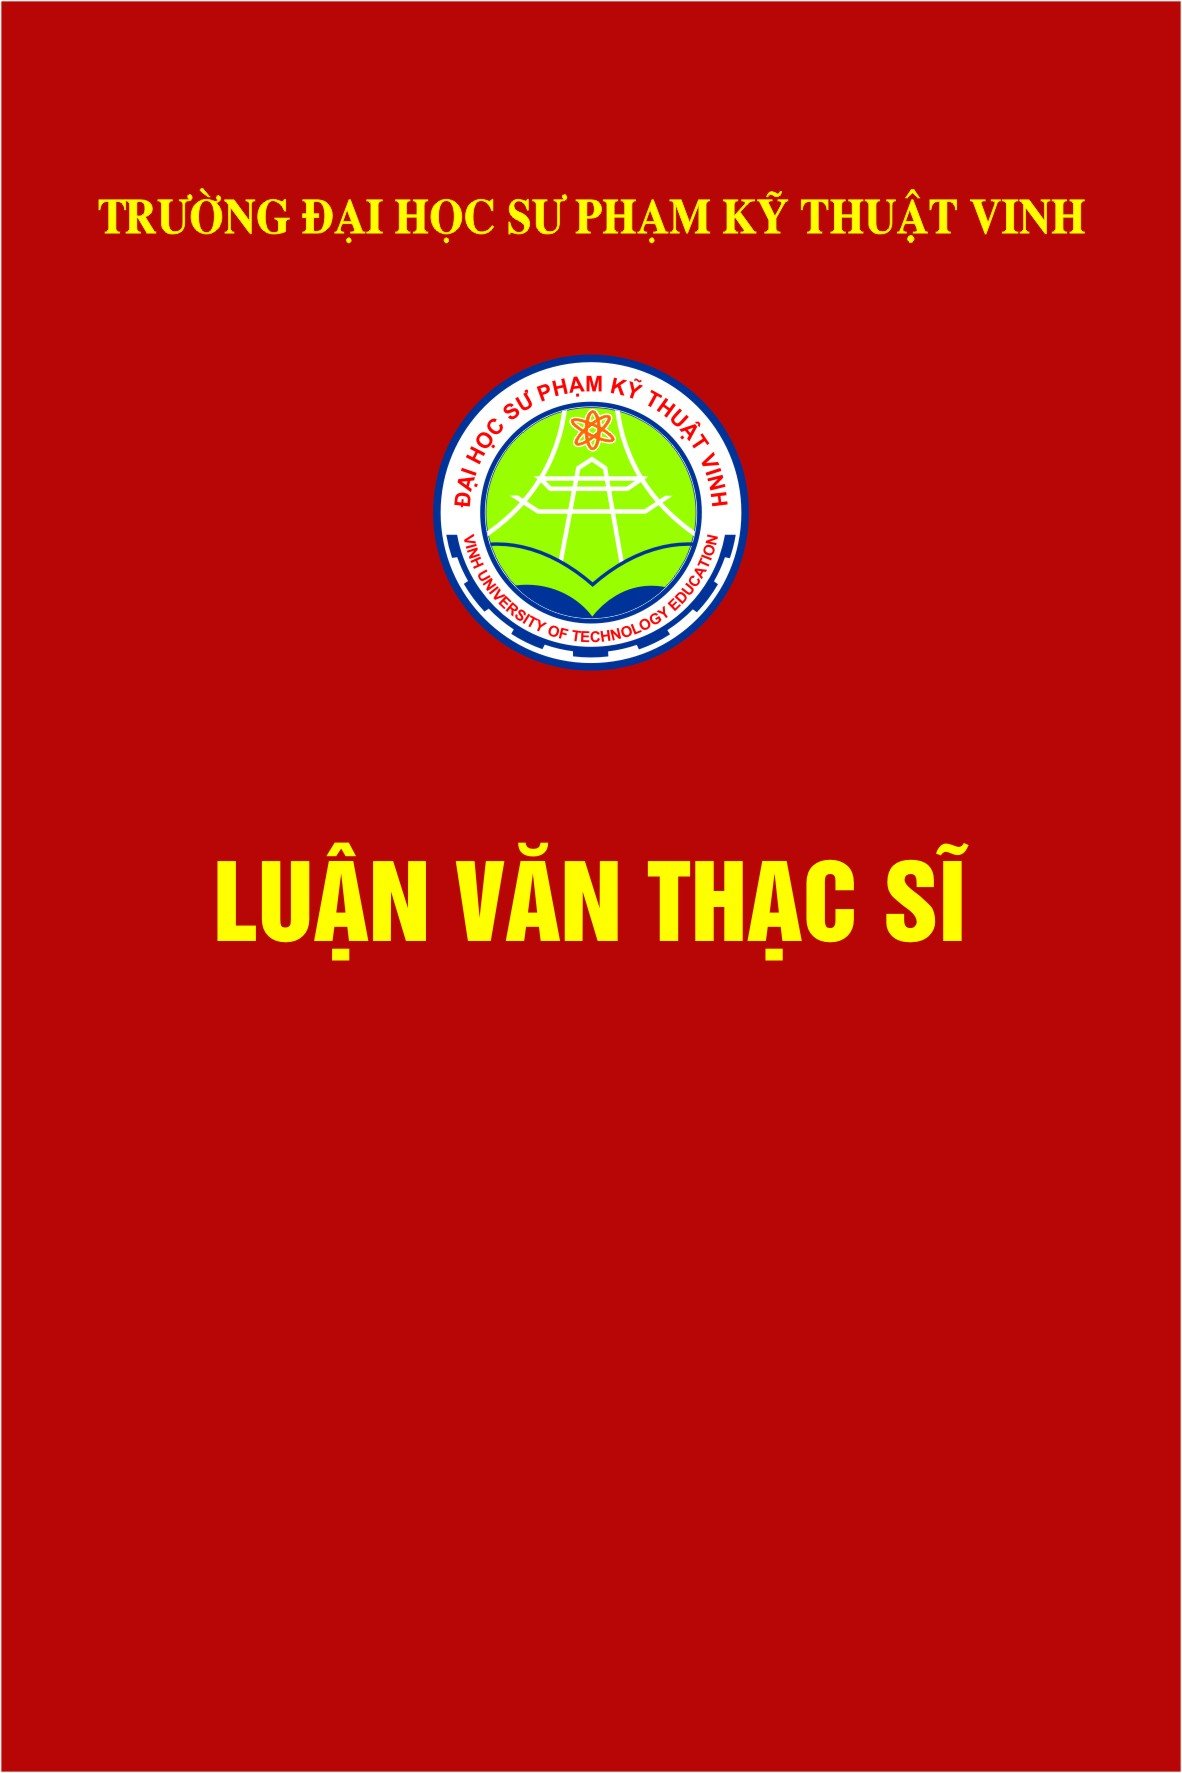 Nghiên cứu giải pháp nâng cao độ tin cậy lưới điện trung áp huyện Kỳ Sơn, Tỉnh Nghệ An